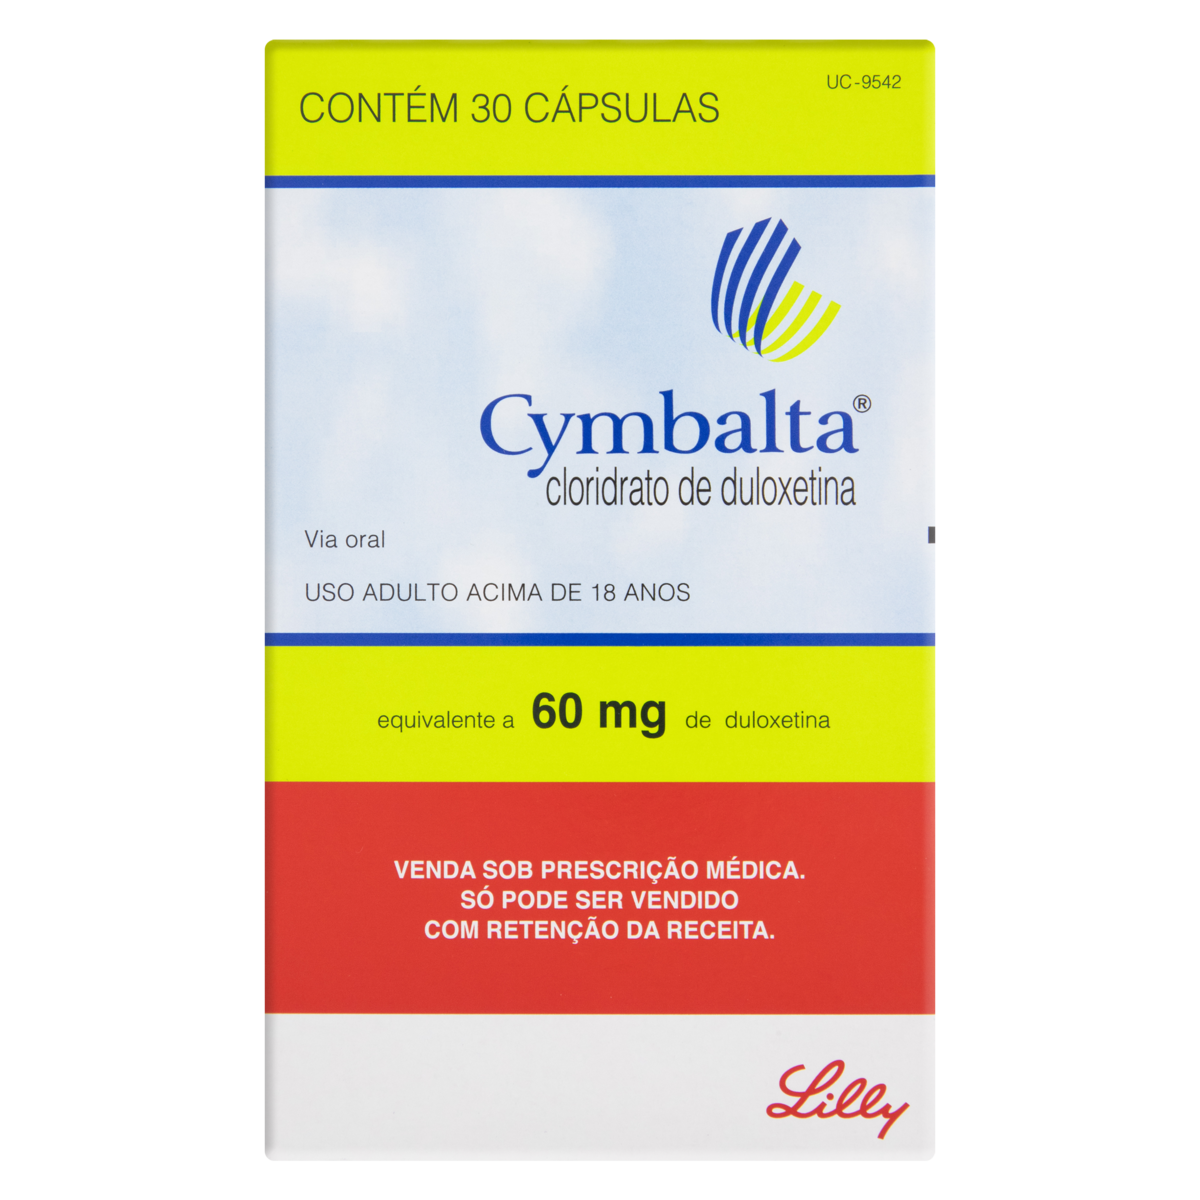 cymbalta-60mg-lilly-caixa-30-c-psulas-gtin-ean-upc-7896382706653